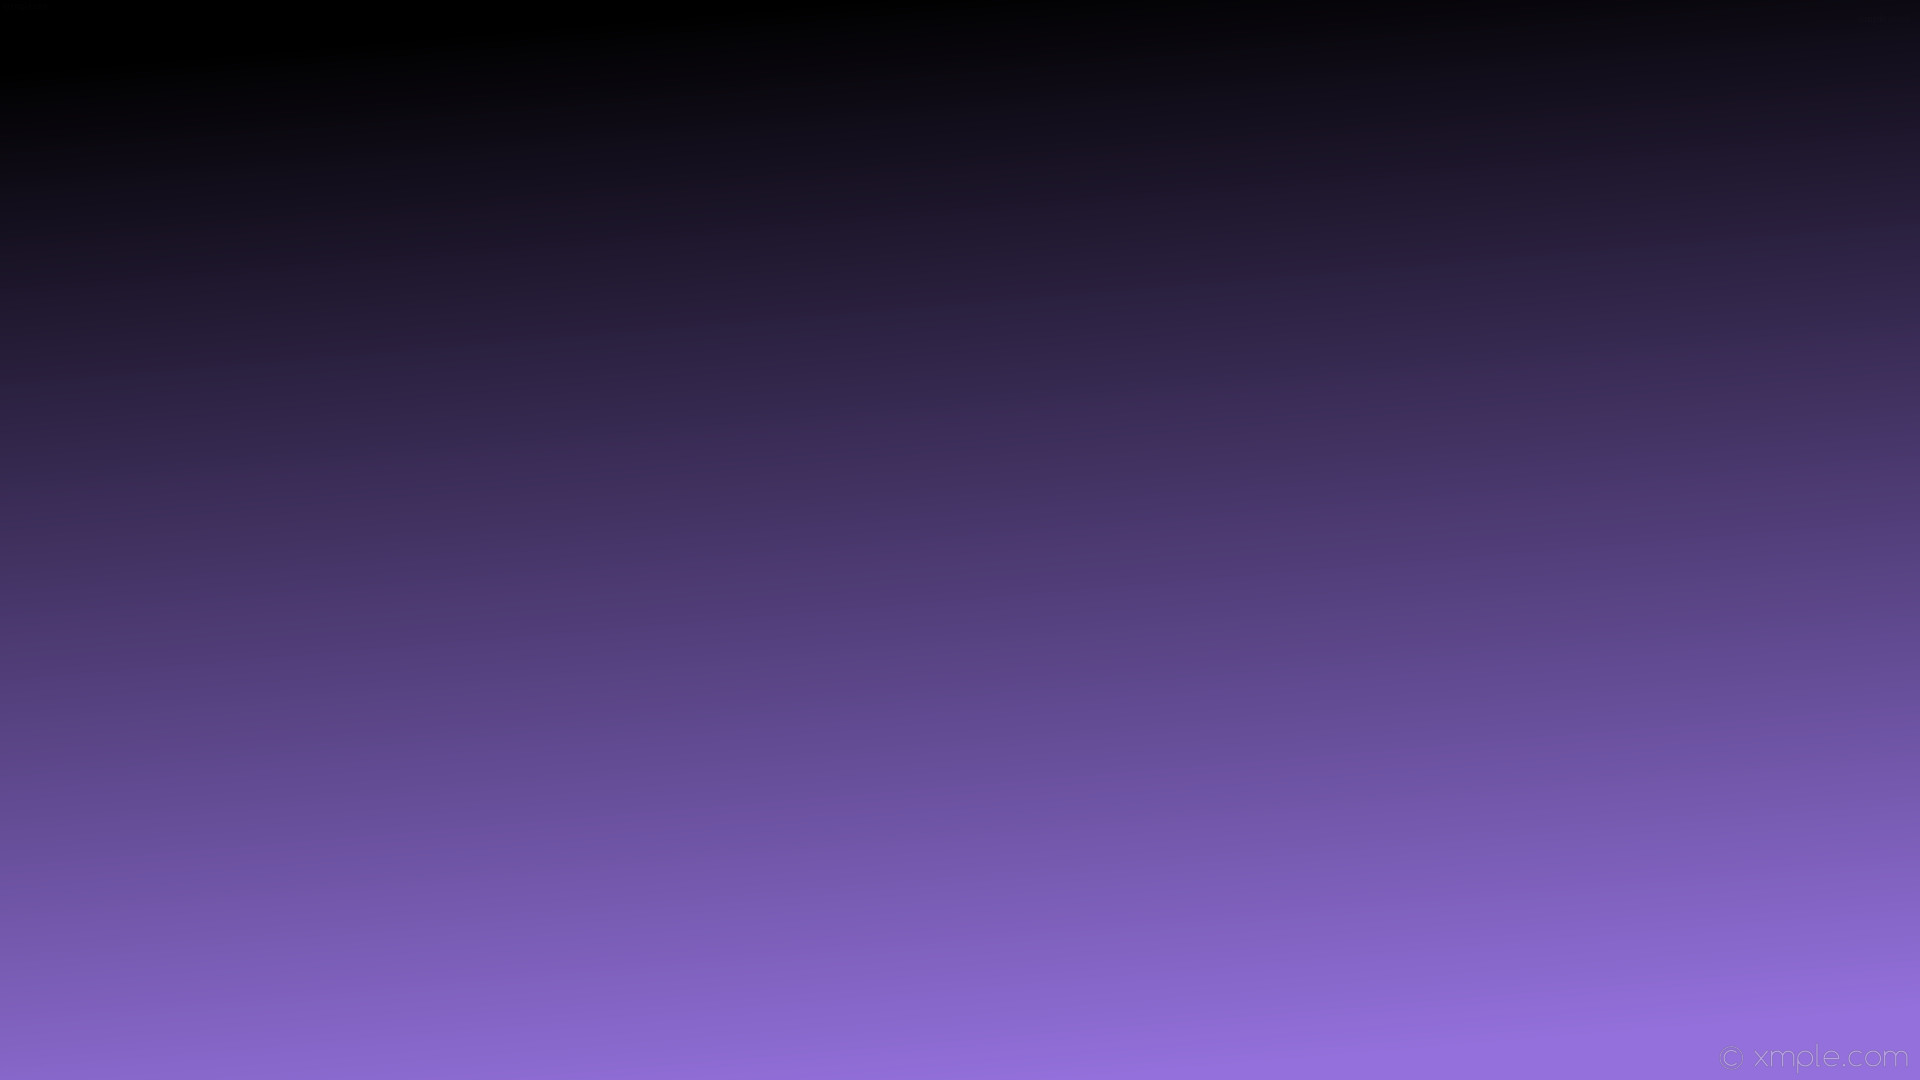 1920x1080 wallpaper black purple gradient linear medium purple #000000 #9370db 105Â°